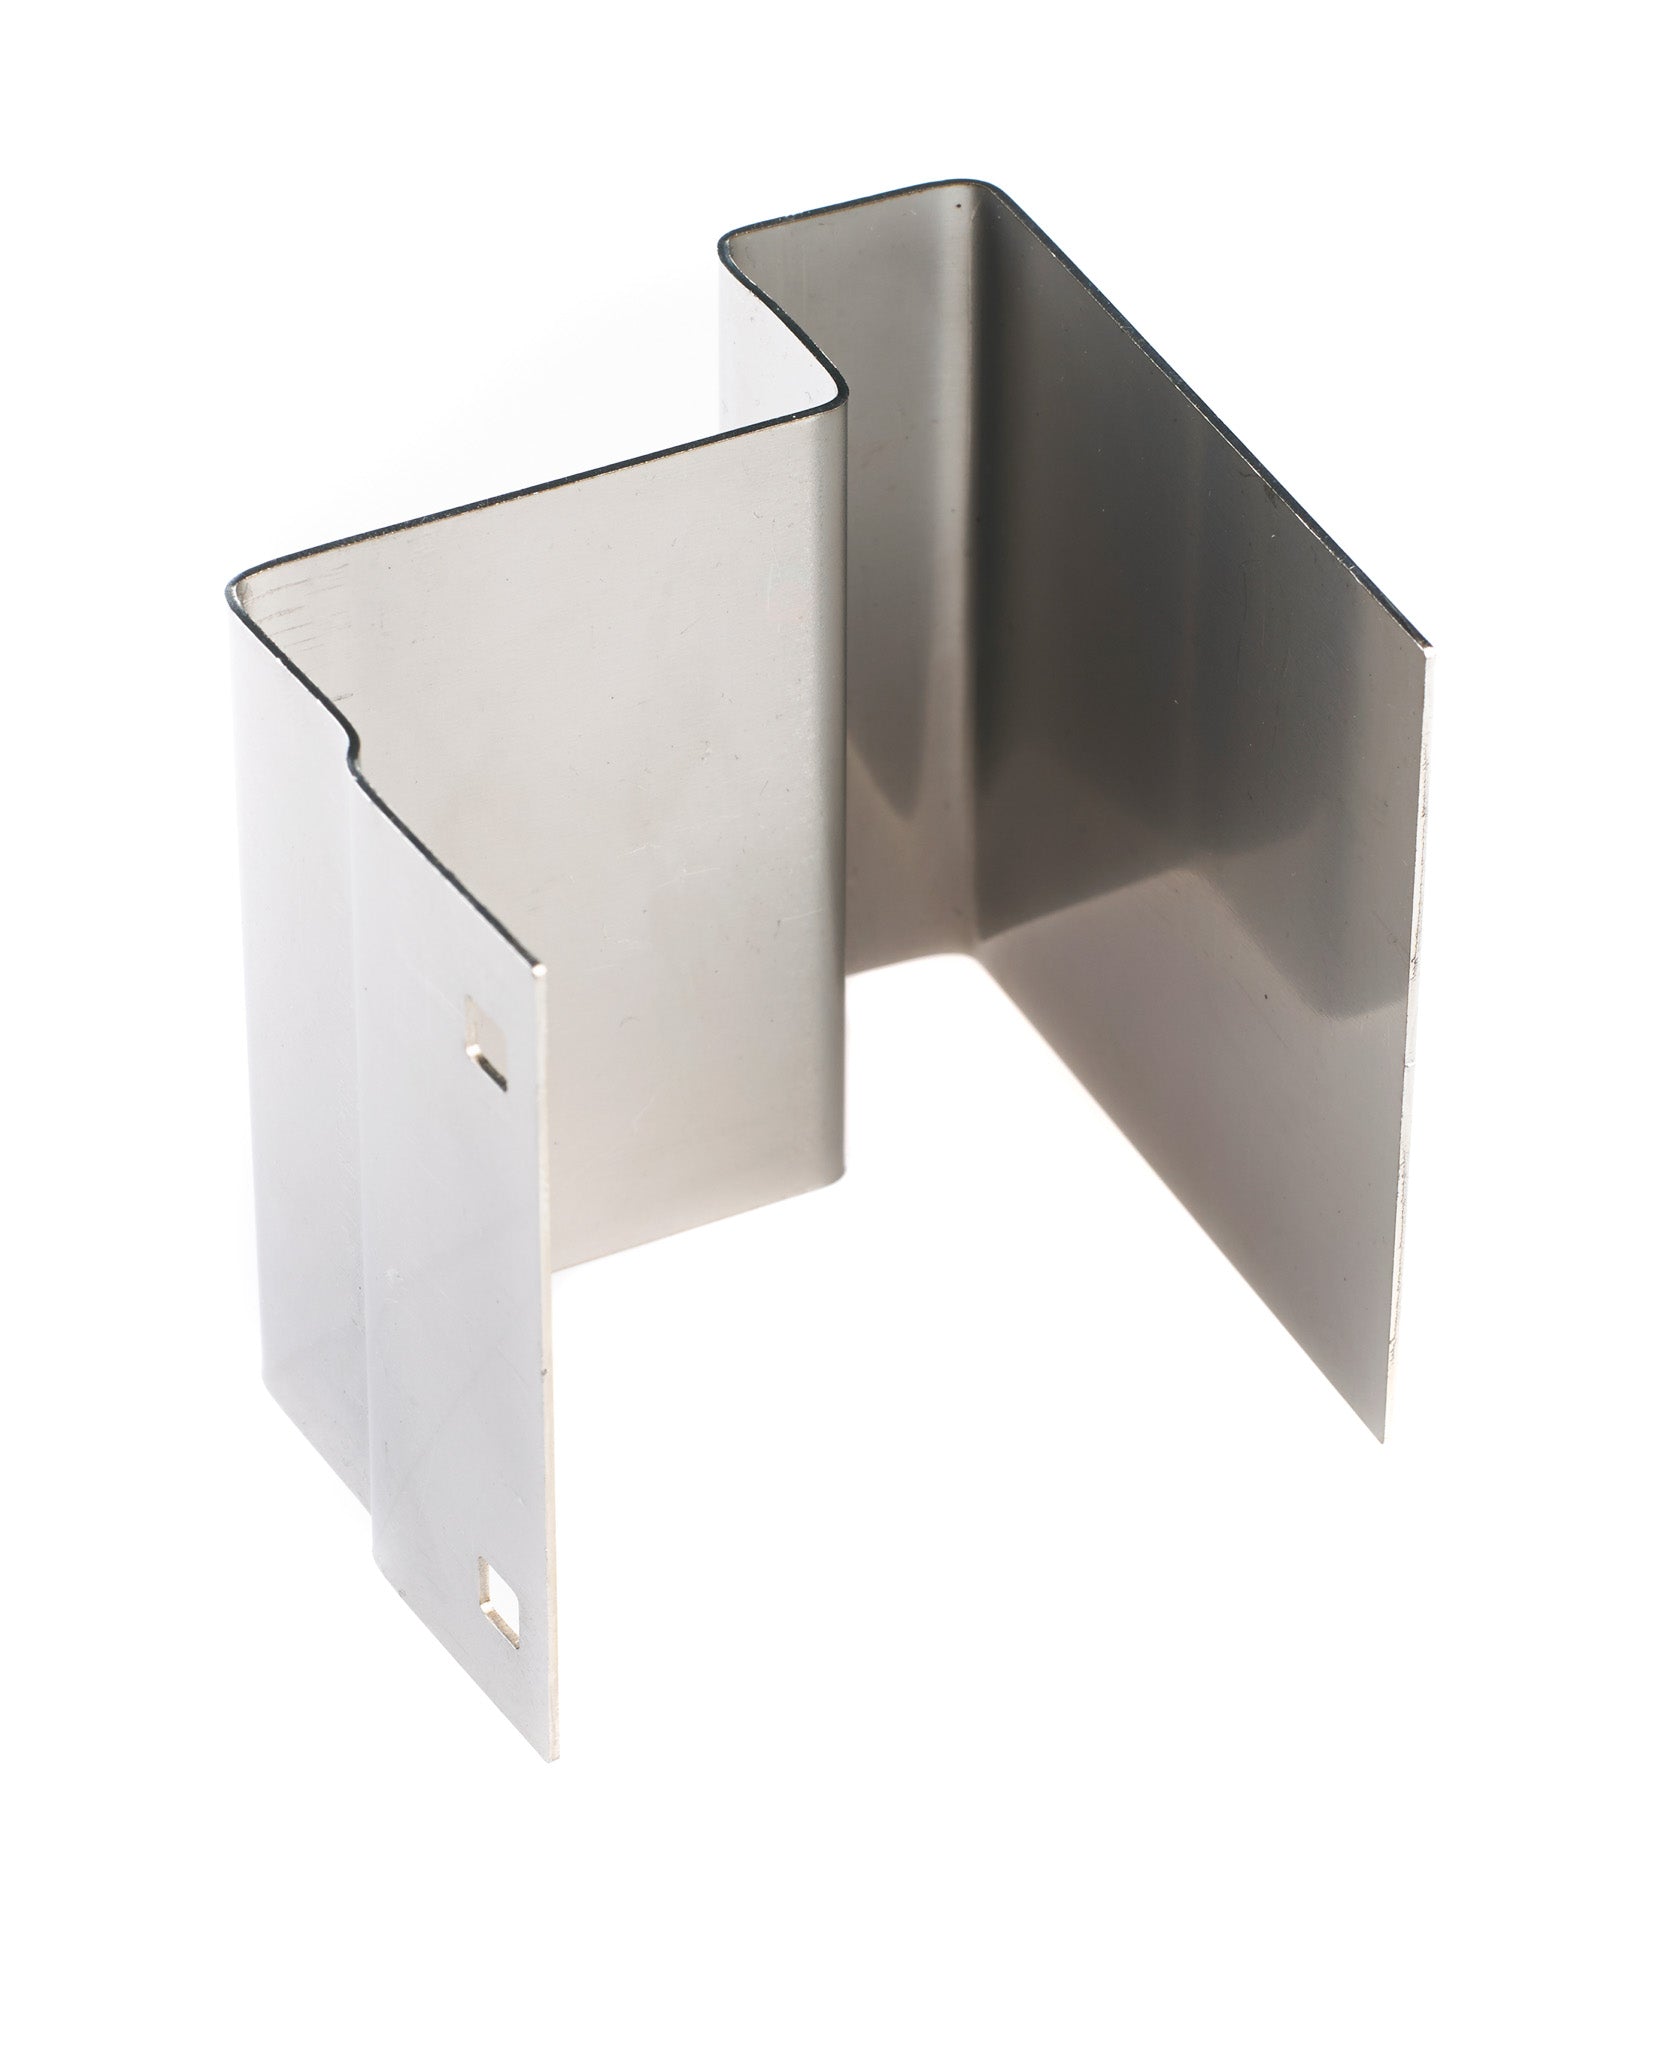 PVCu door bracket for Supra J5 key safes